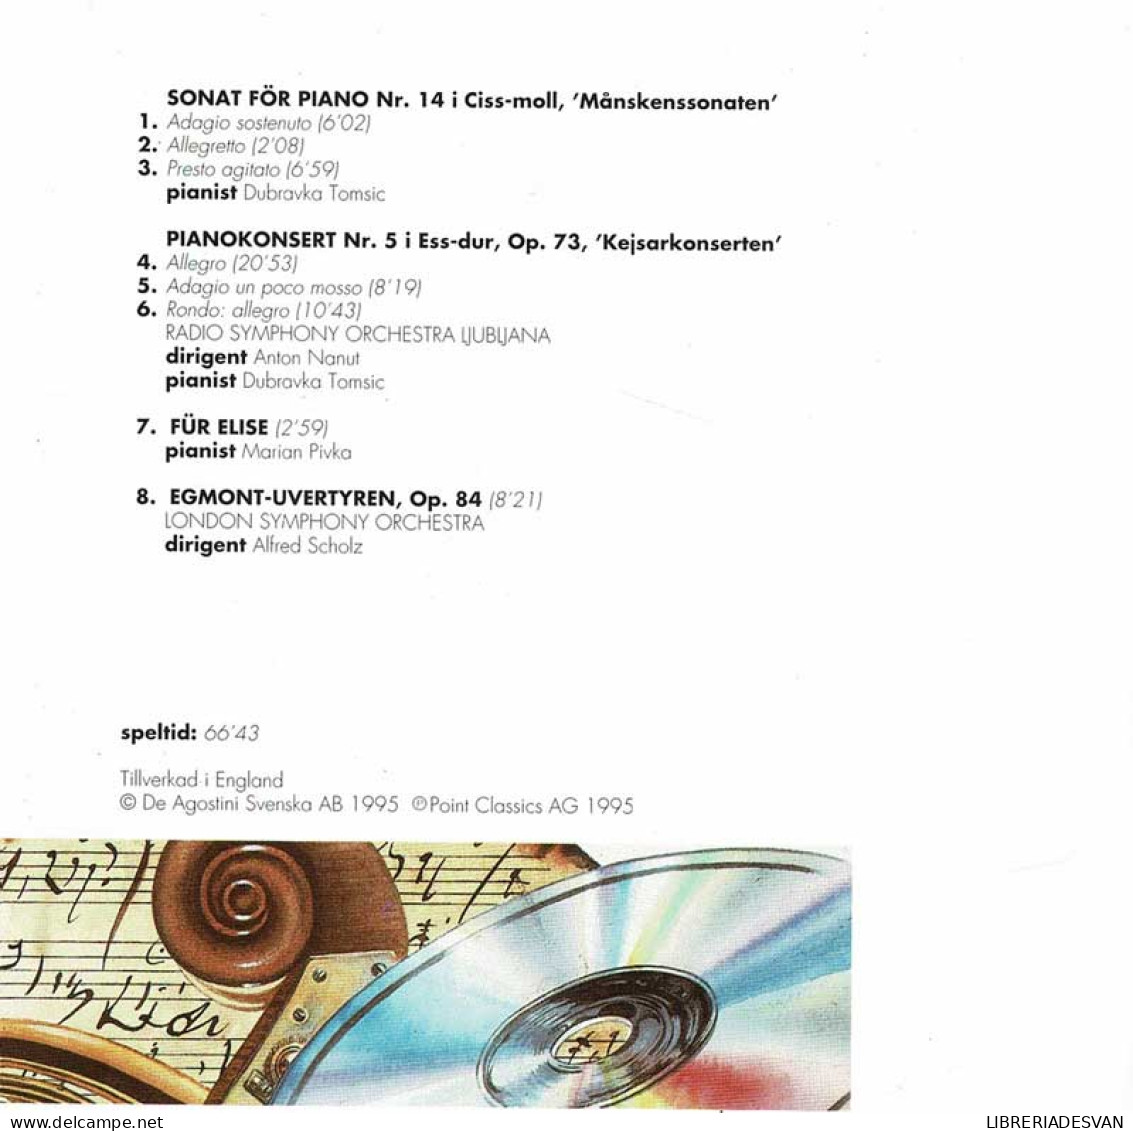 De Klassiska Kompositorerna - Beethoven. Melodiska Masterverk. CD - Clásica